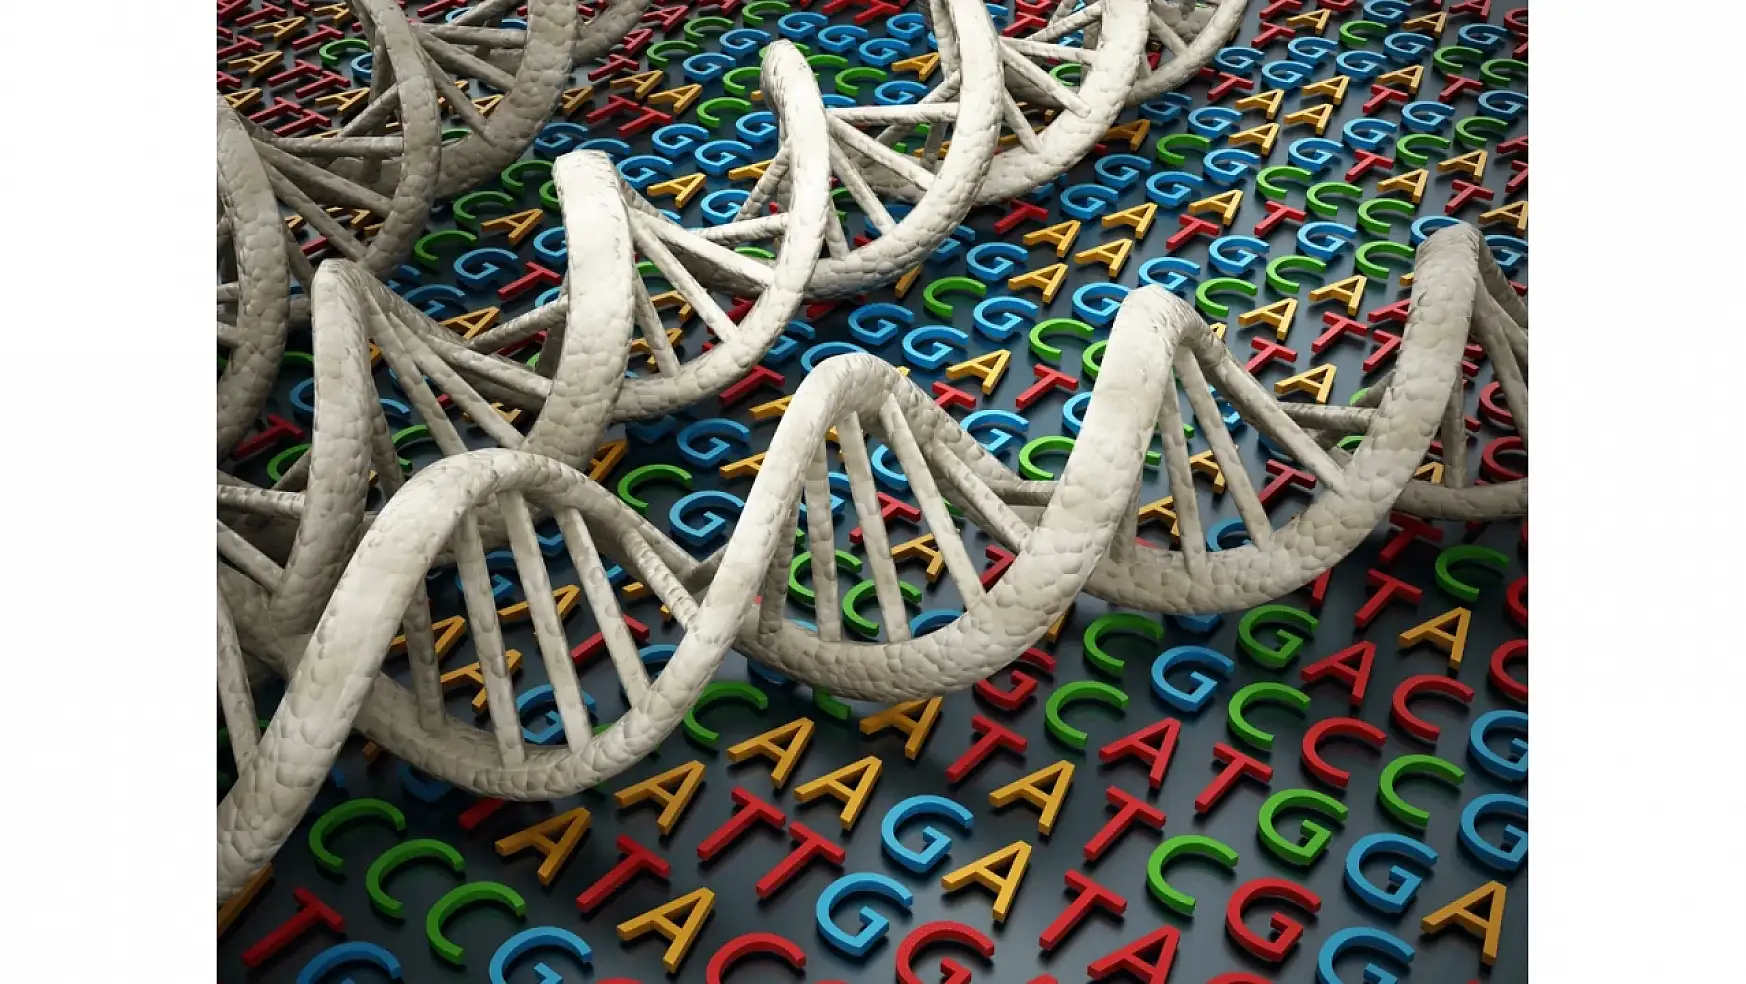 DNA'nın yapısı ve genetik kodlama: Temel bilgiler ve yeni keşifler